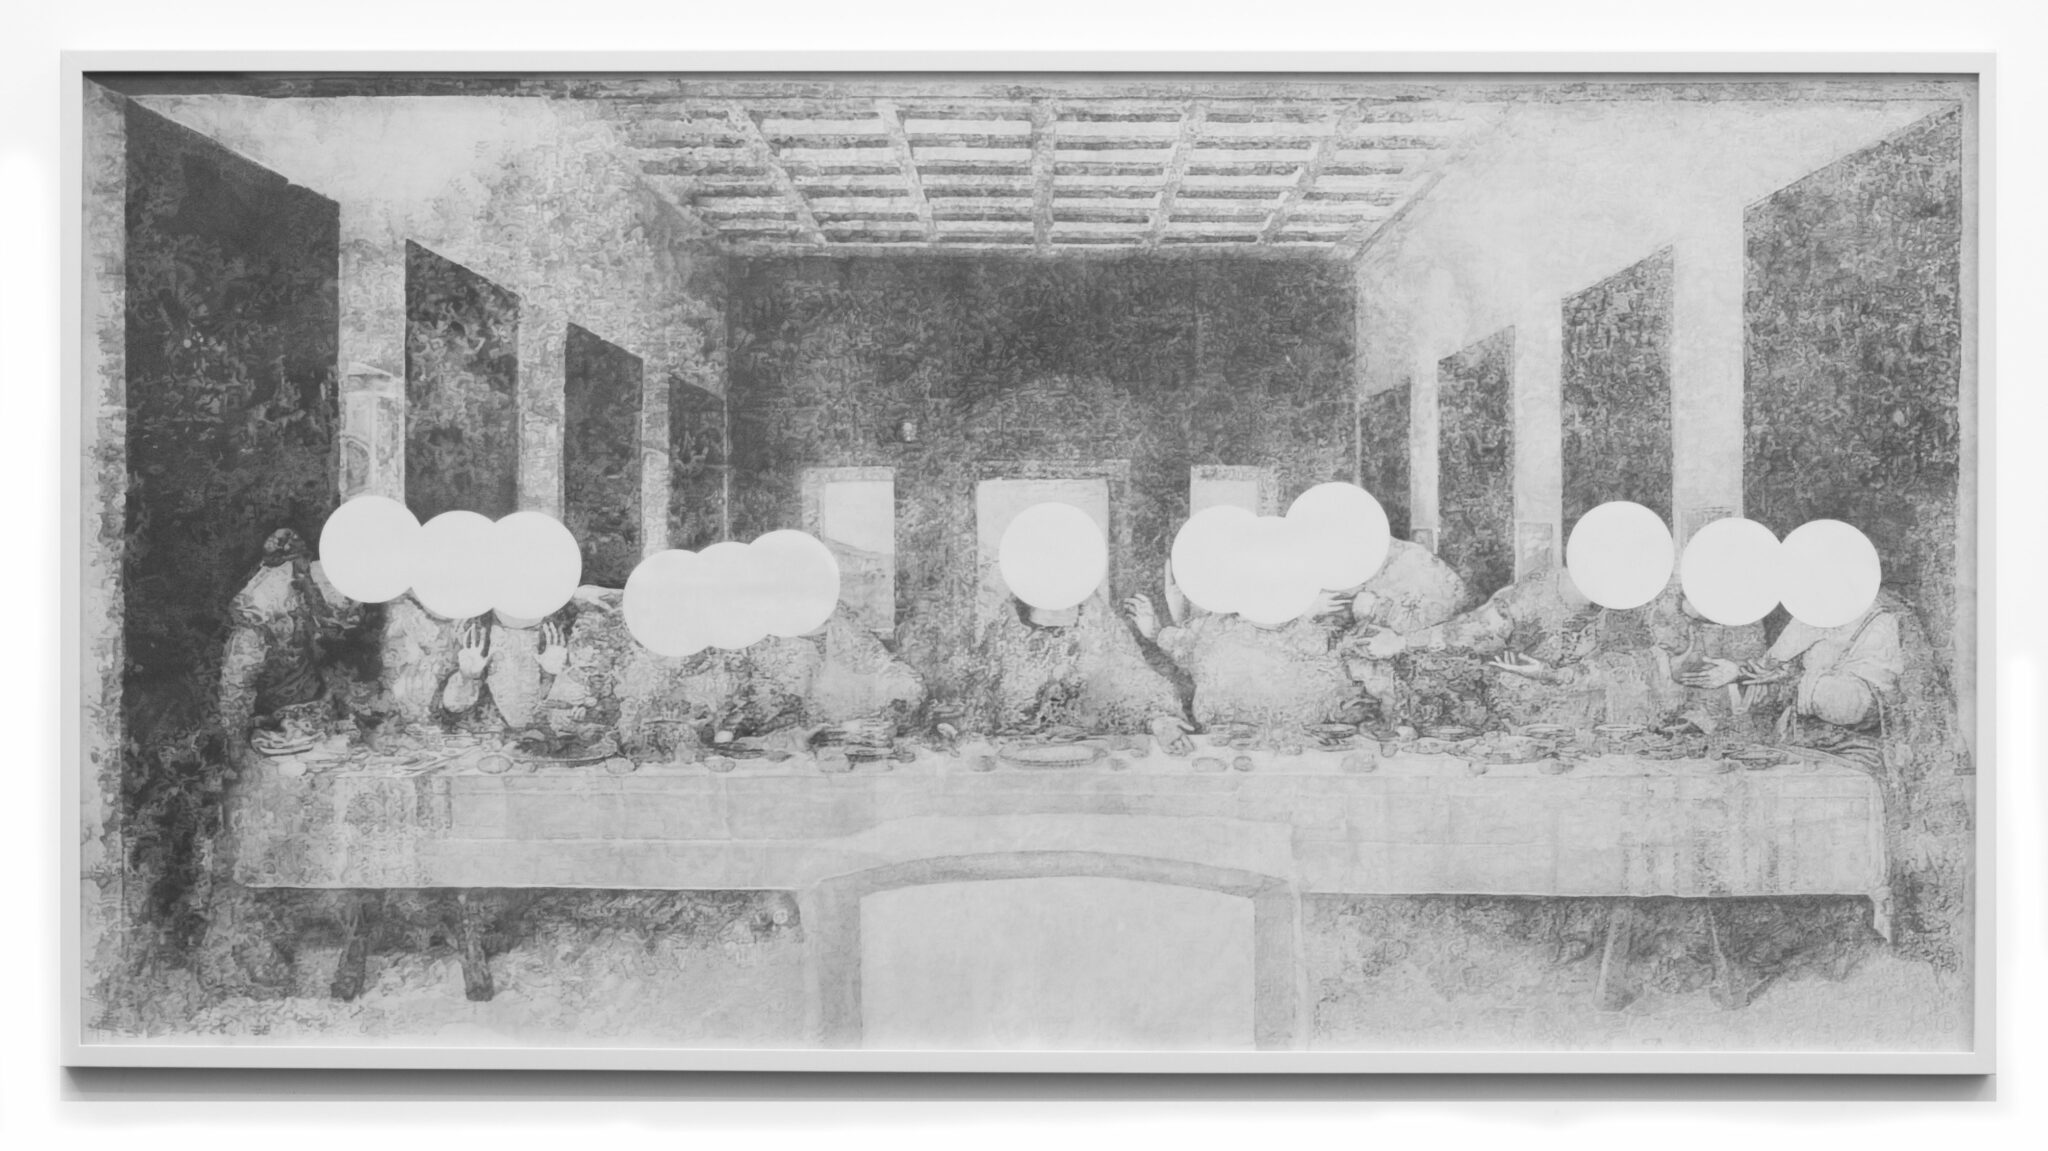 Jean Bedez, Le Cénacle, 2010, Dessin à la mine graphite sur papier canson 224g/m2, 137 x 266 cm © Galerie Suzanne Tarasieve